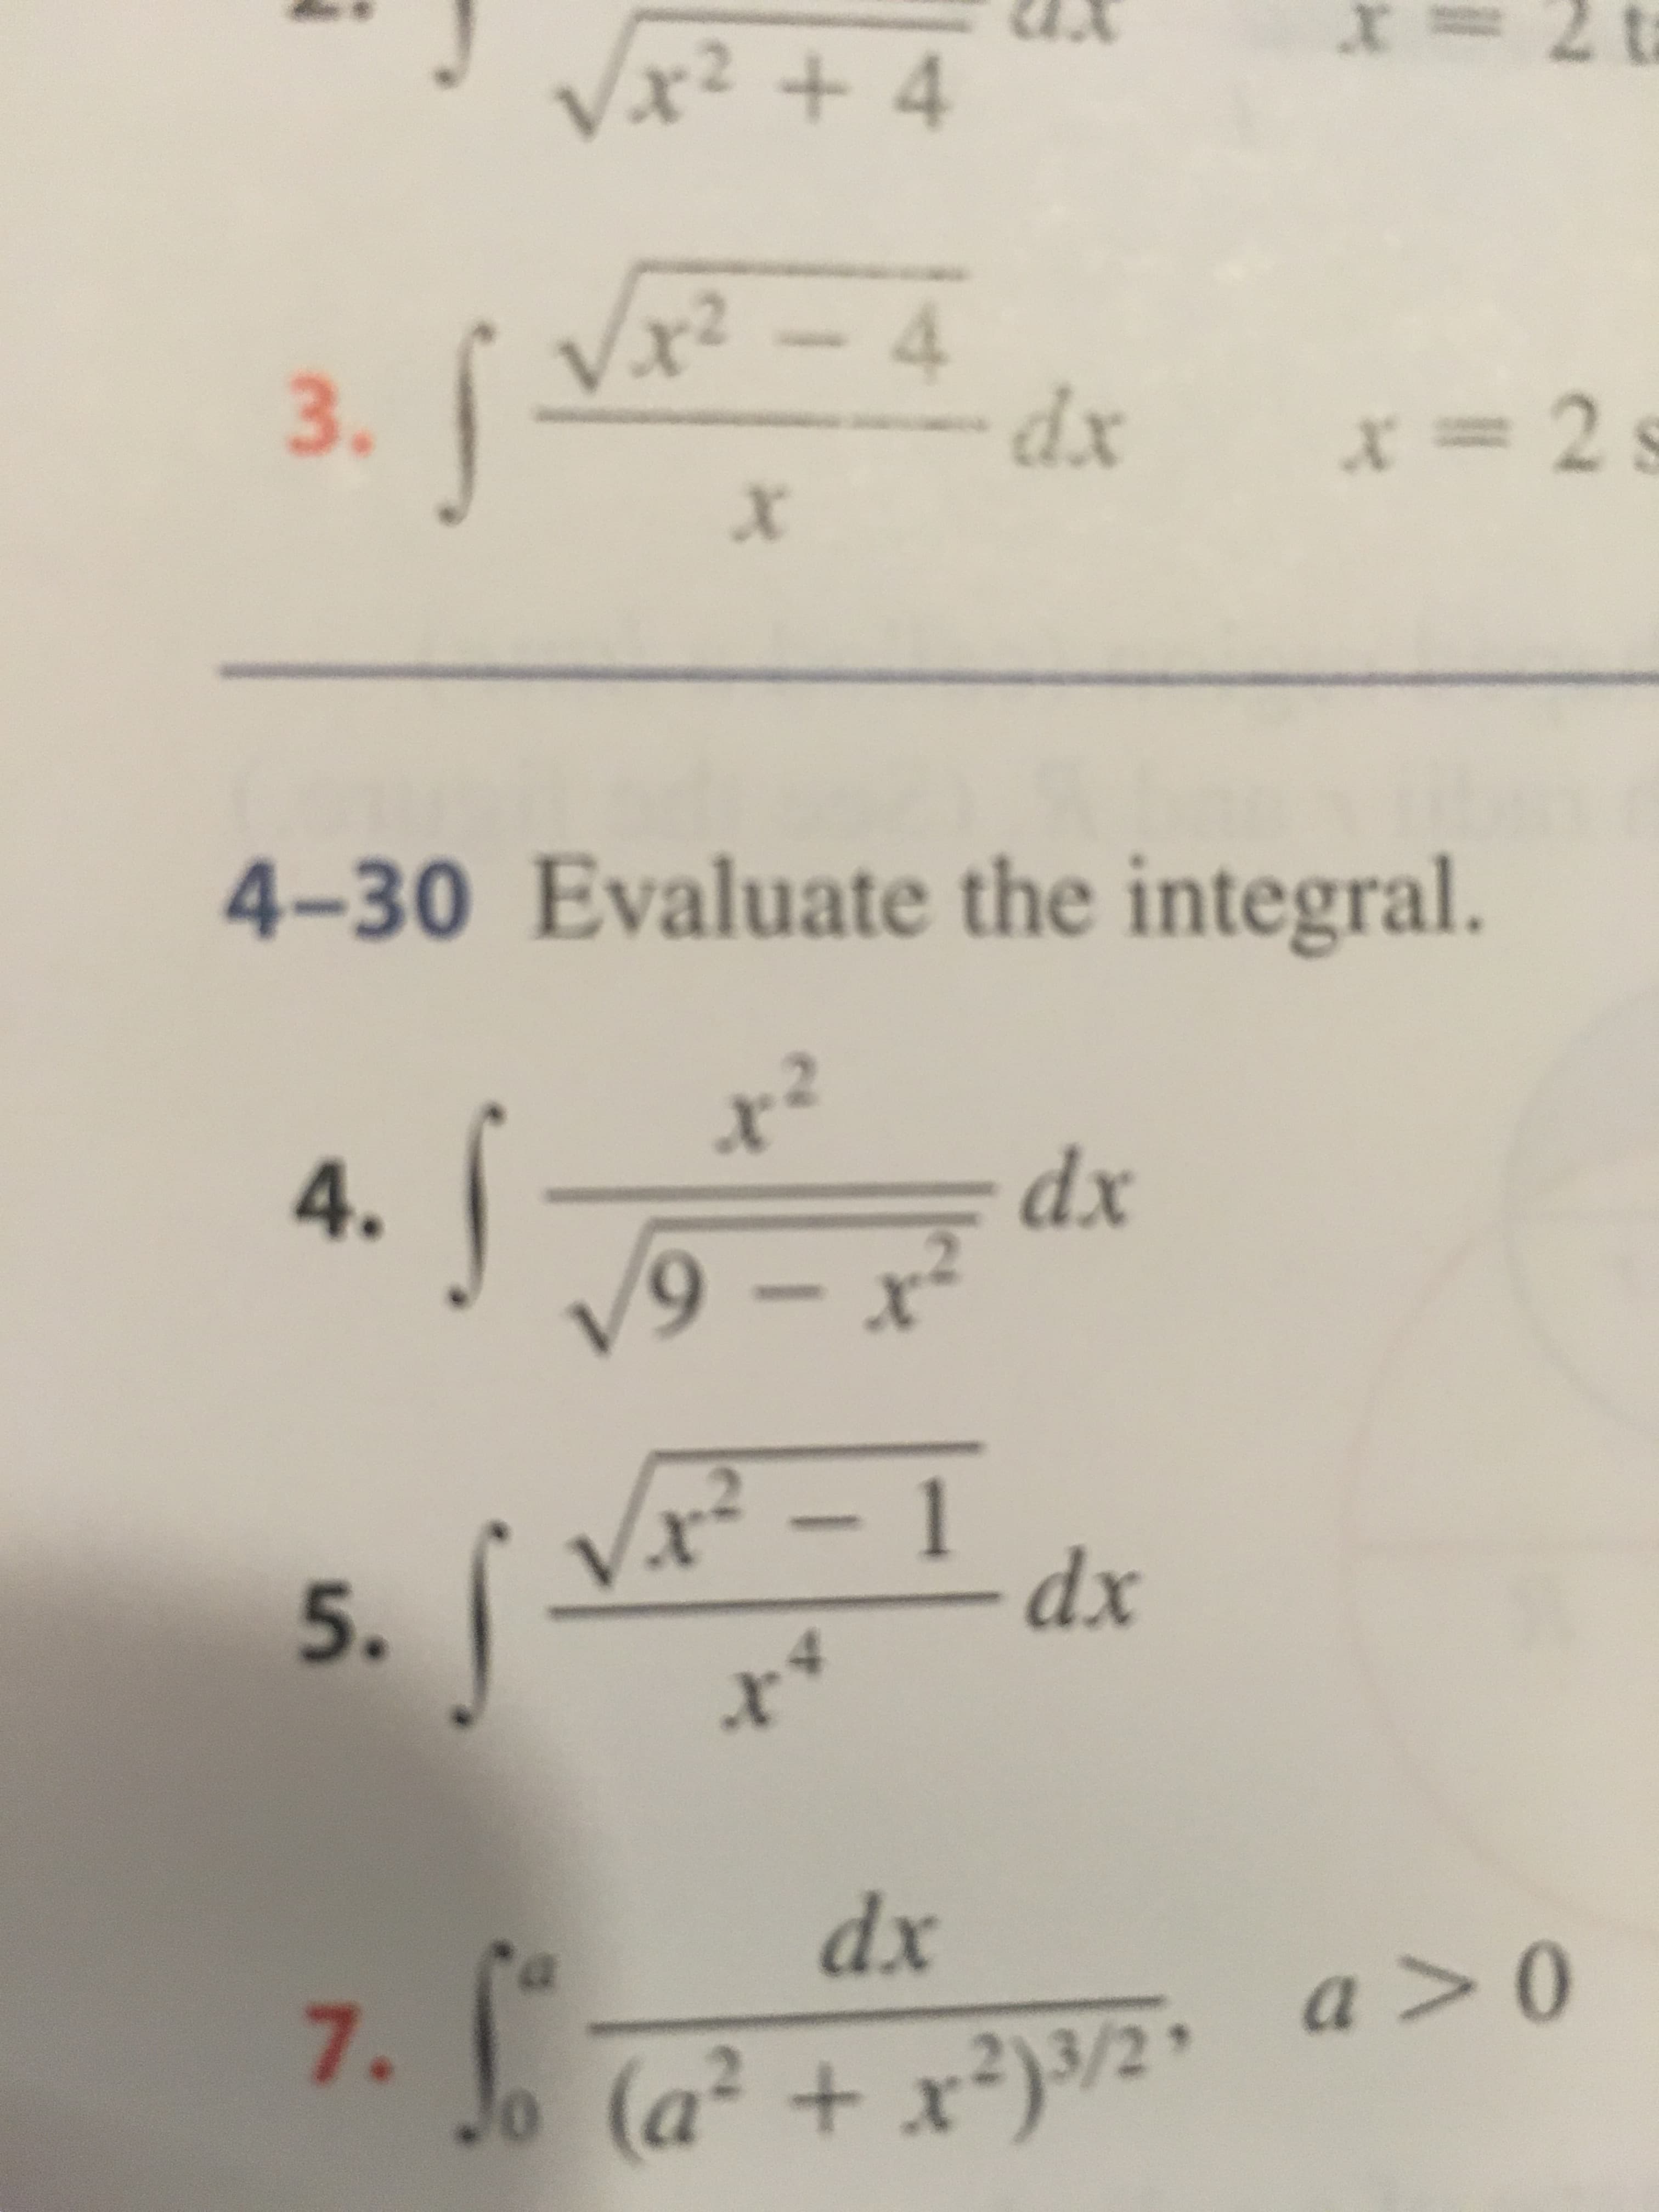 2 t
X
Vx2 + 4
2
- 4
- dx
3.
=2
X
4-30 Evaluate the integral.
dx
9-x
4.
x- 1
dx
5.
x
dx
a > 0
7.
Jo
(a2+x2)/2
+ x
